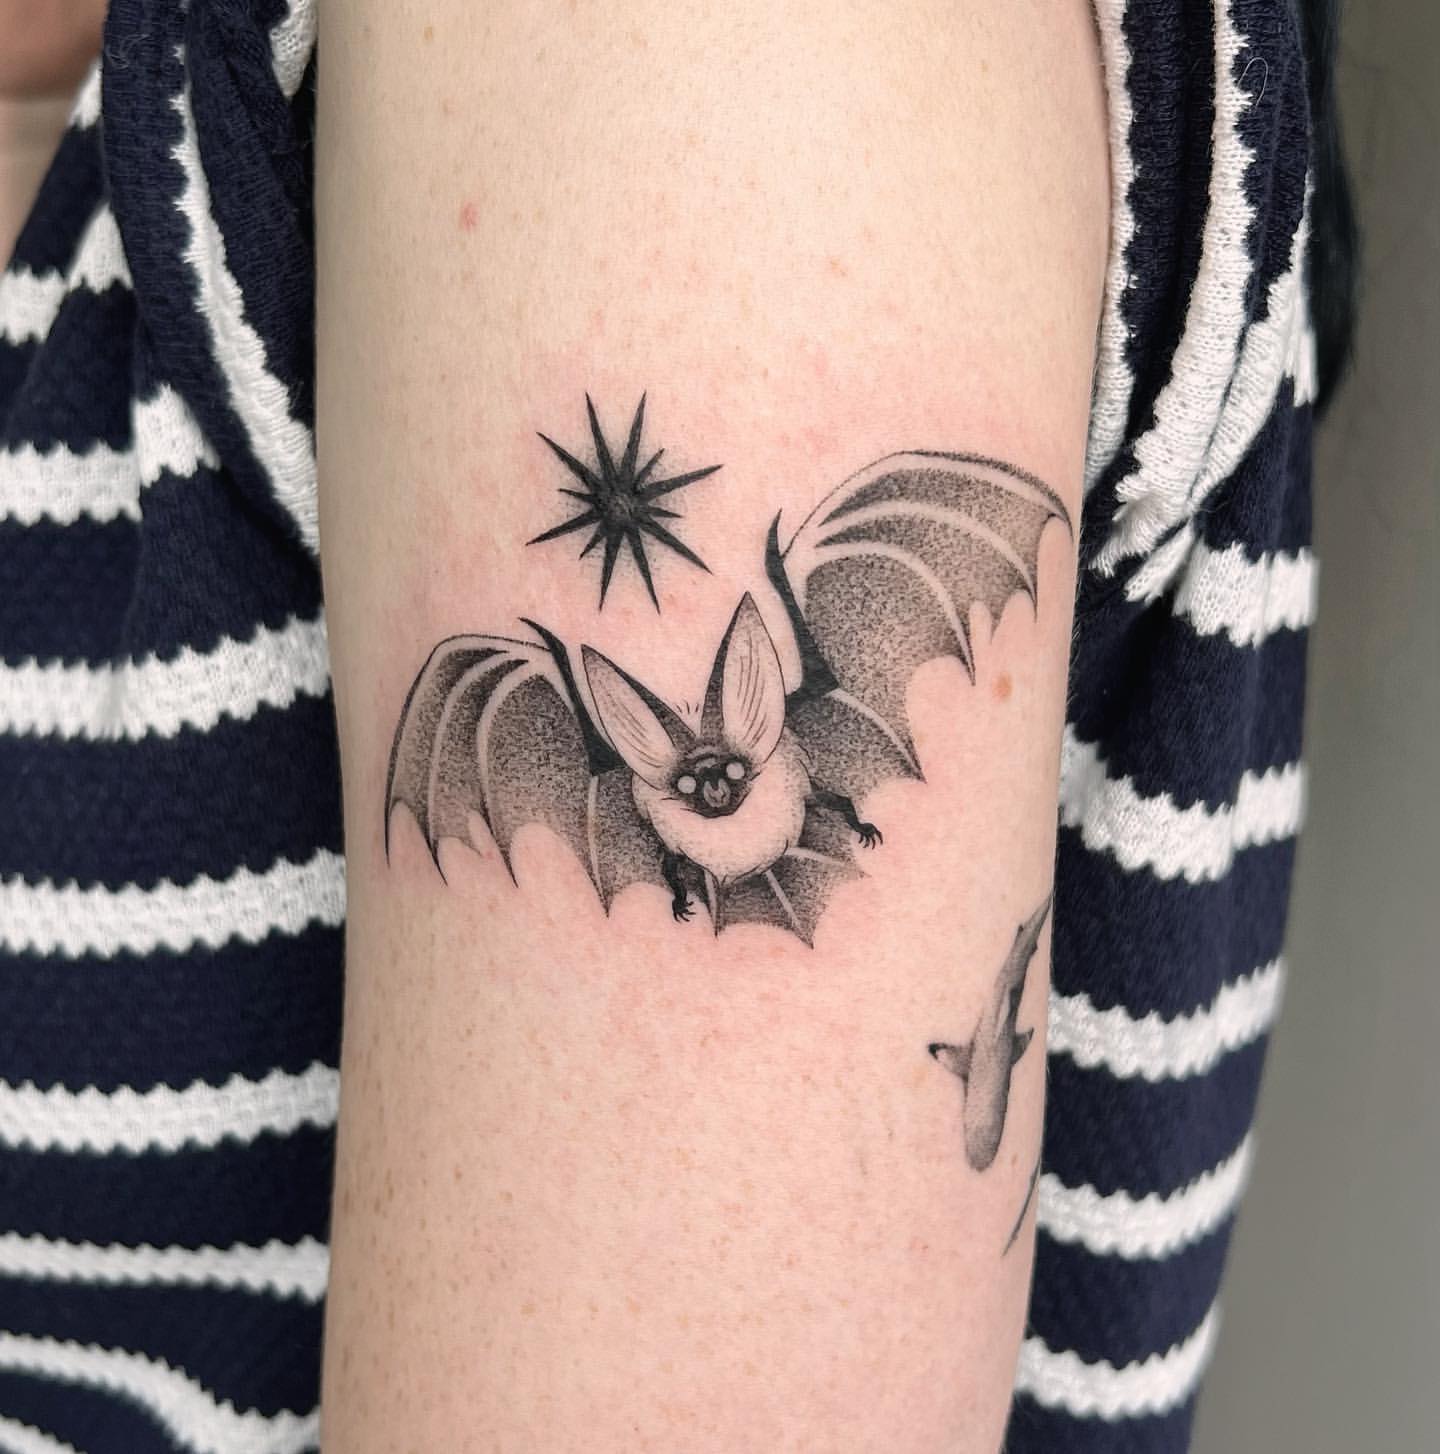 Bat Tattoo Ideas 5